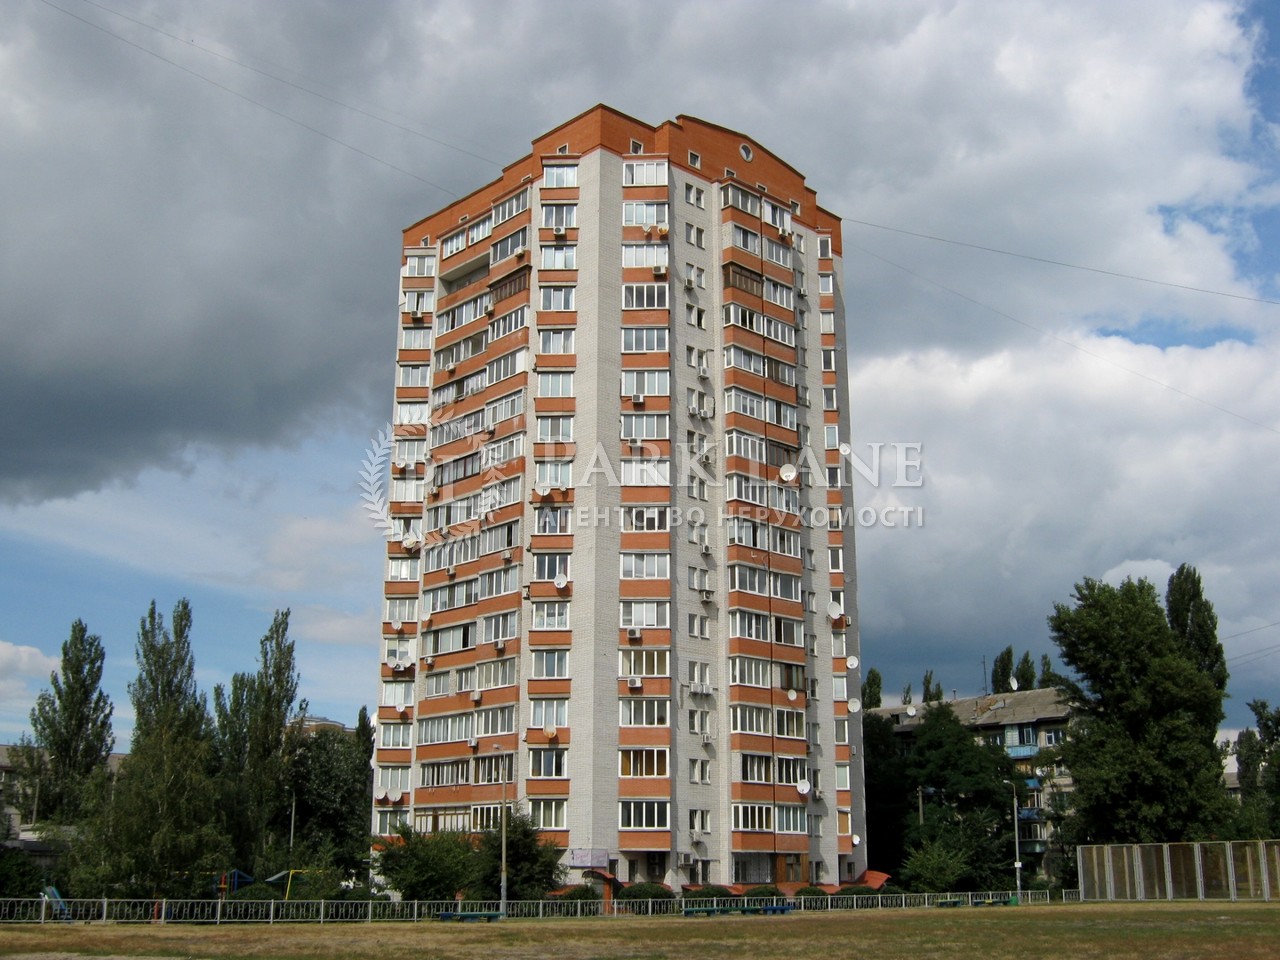  Нежилое помещение, ул. Красноткацкая, Киев, G-629771 - Фото 1